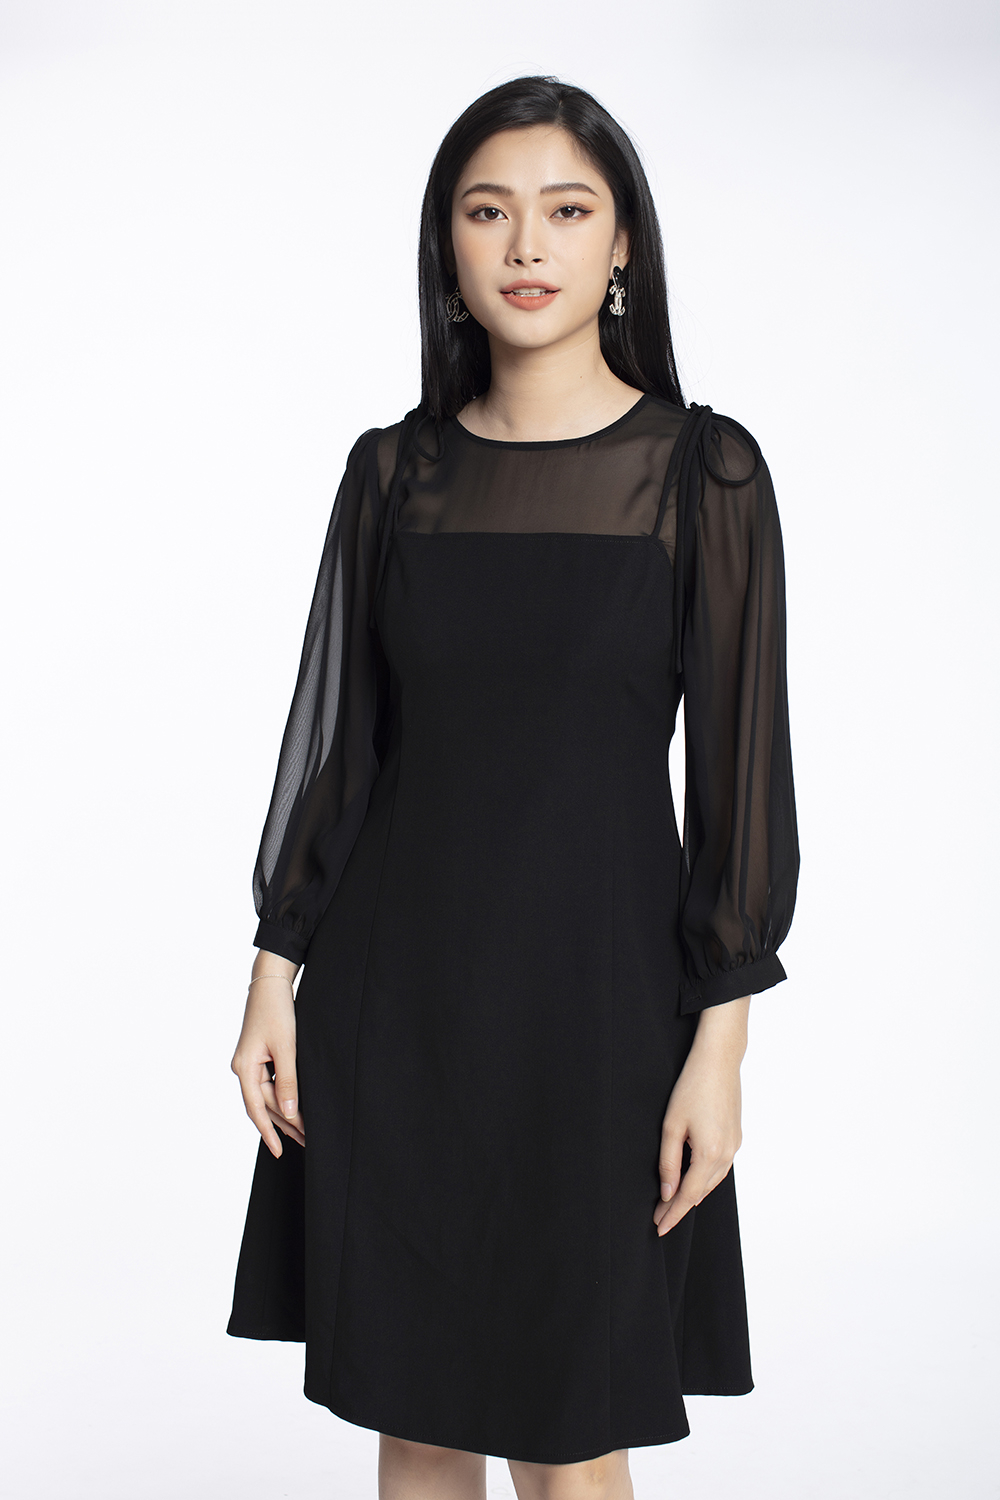 Tổng hợp các mẫu đầm đen sang trọng cực xinh cho nàng dạo phố | Fashion,  Slip dress, Style